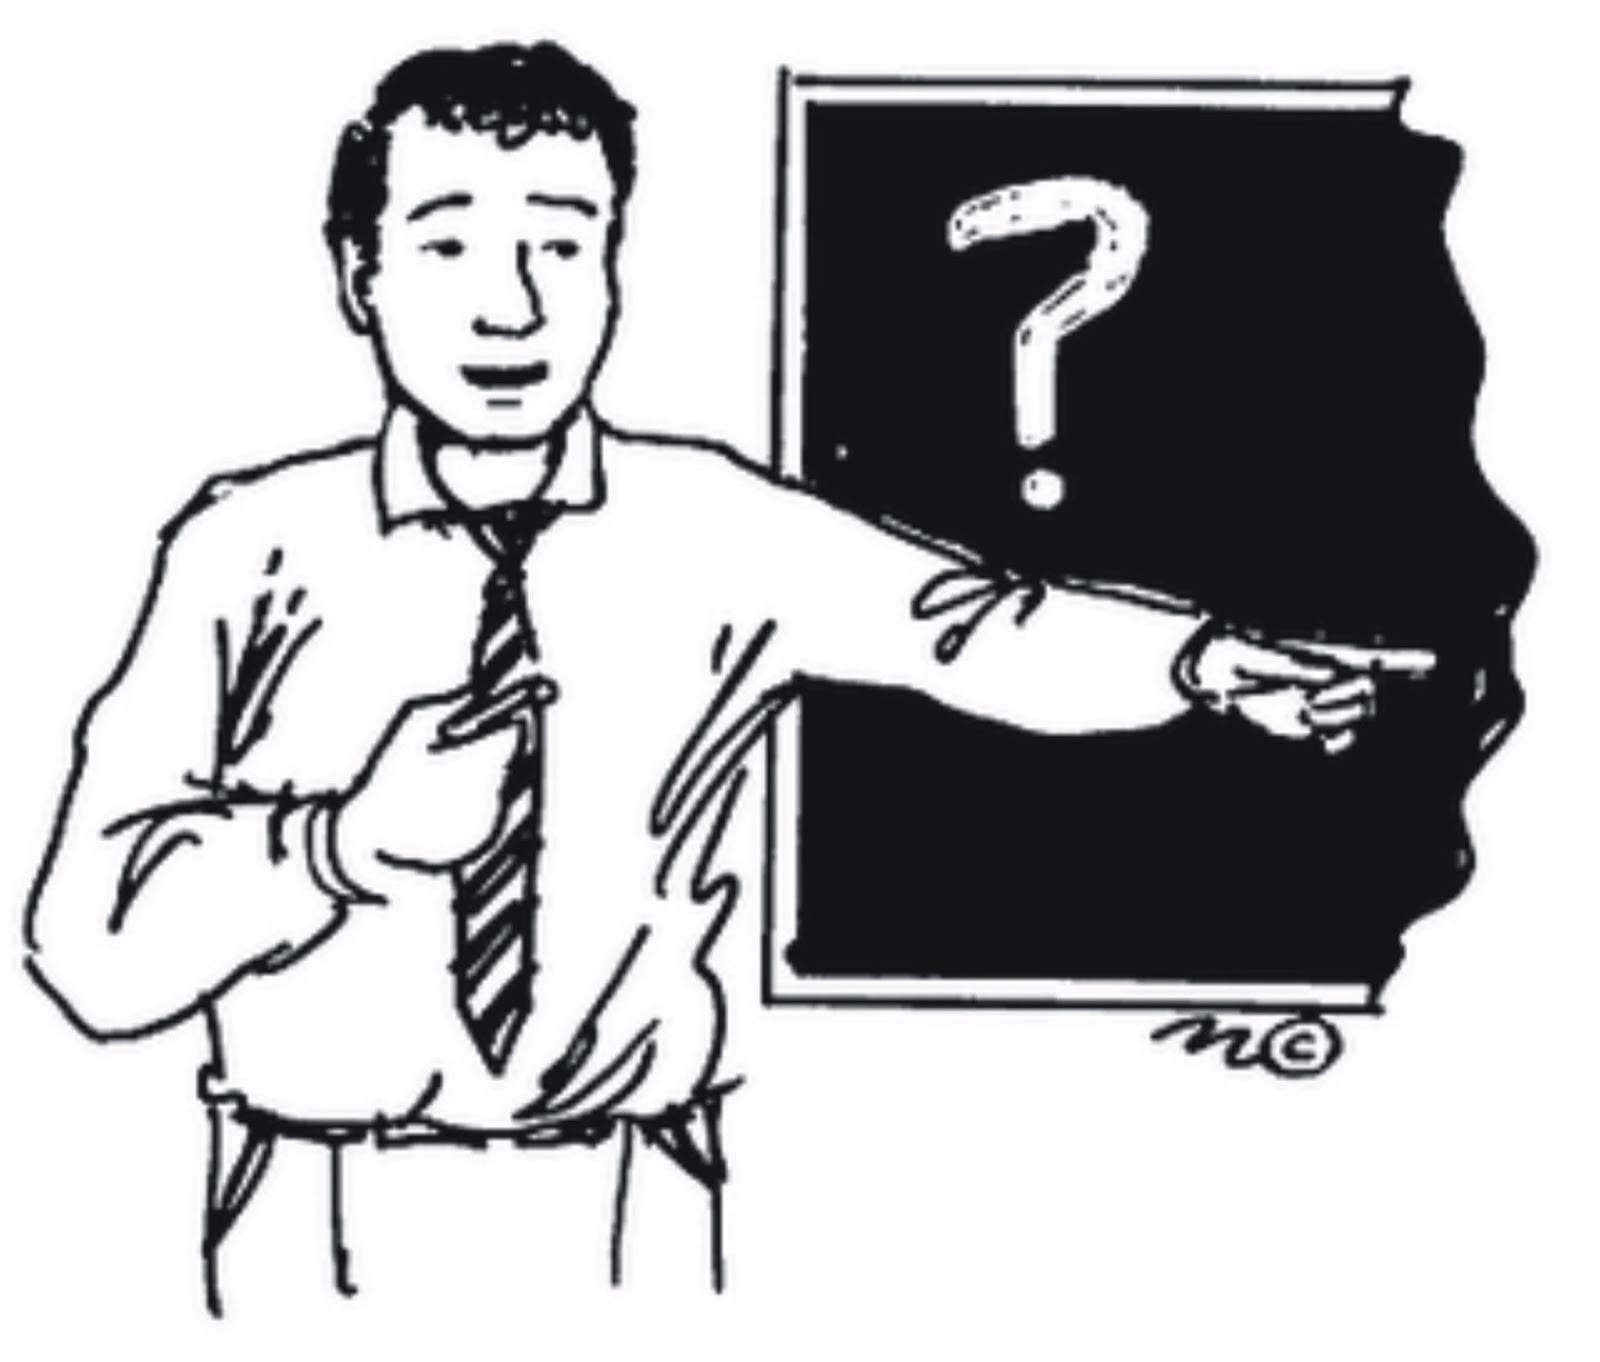 necktie question mark blackboard